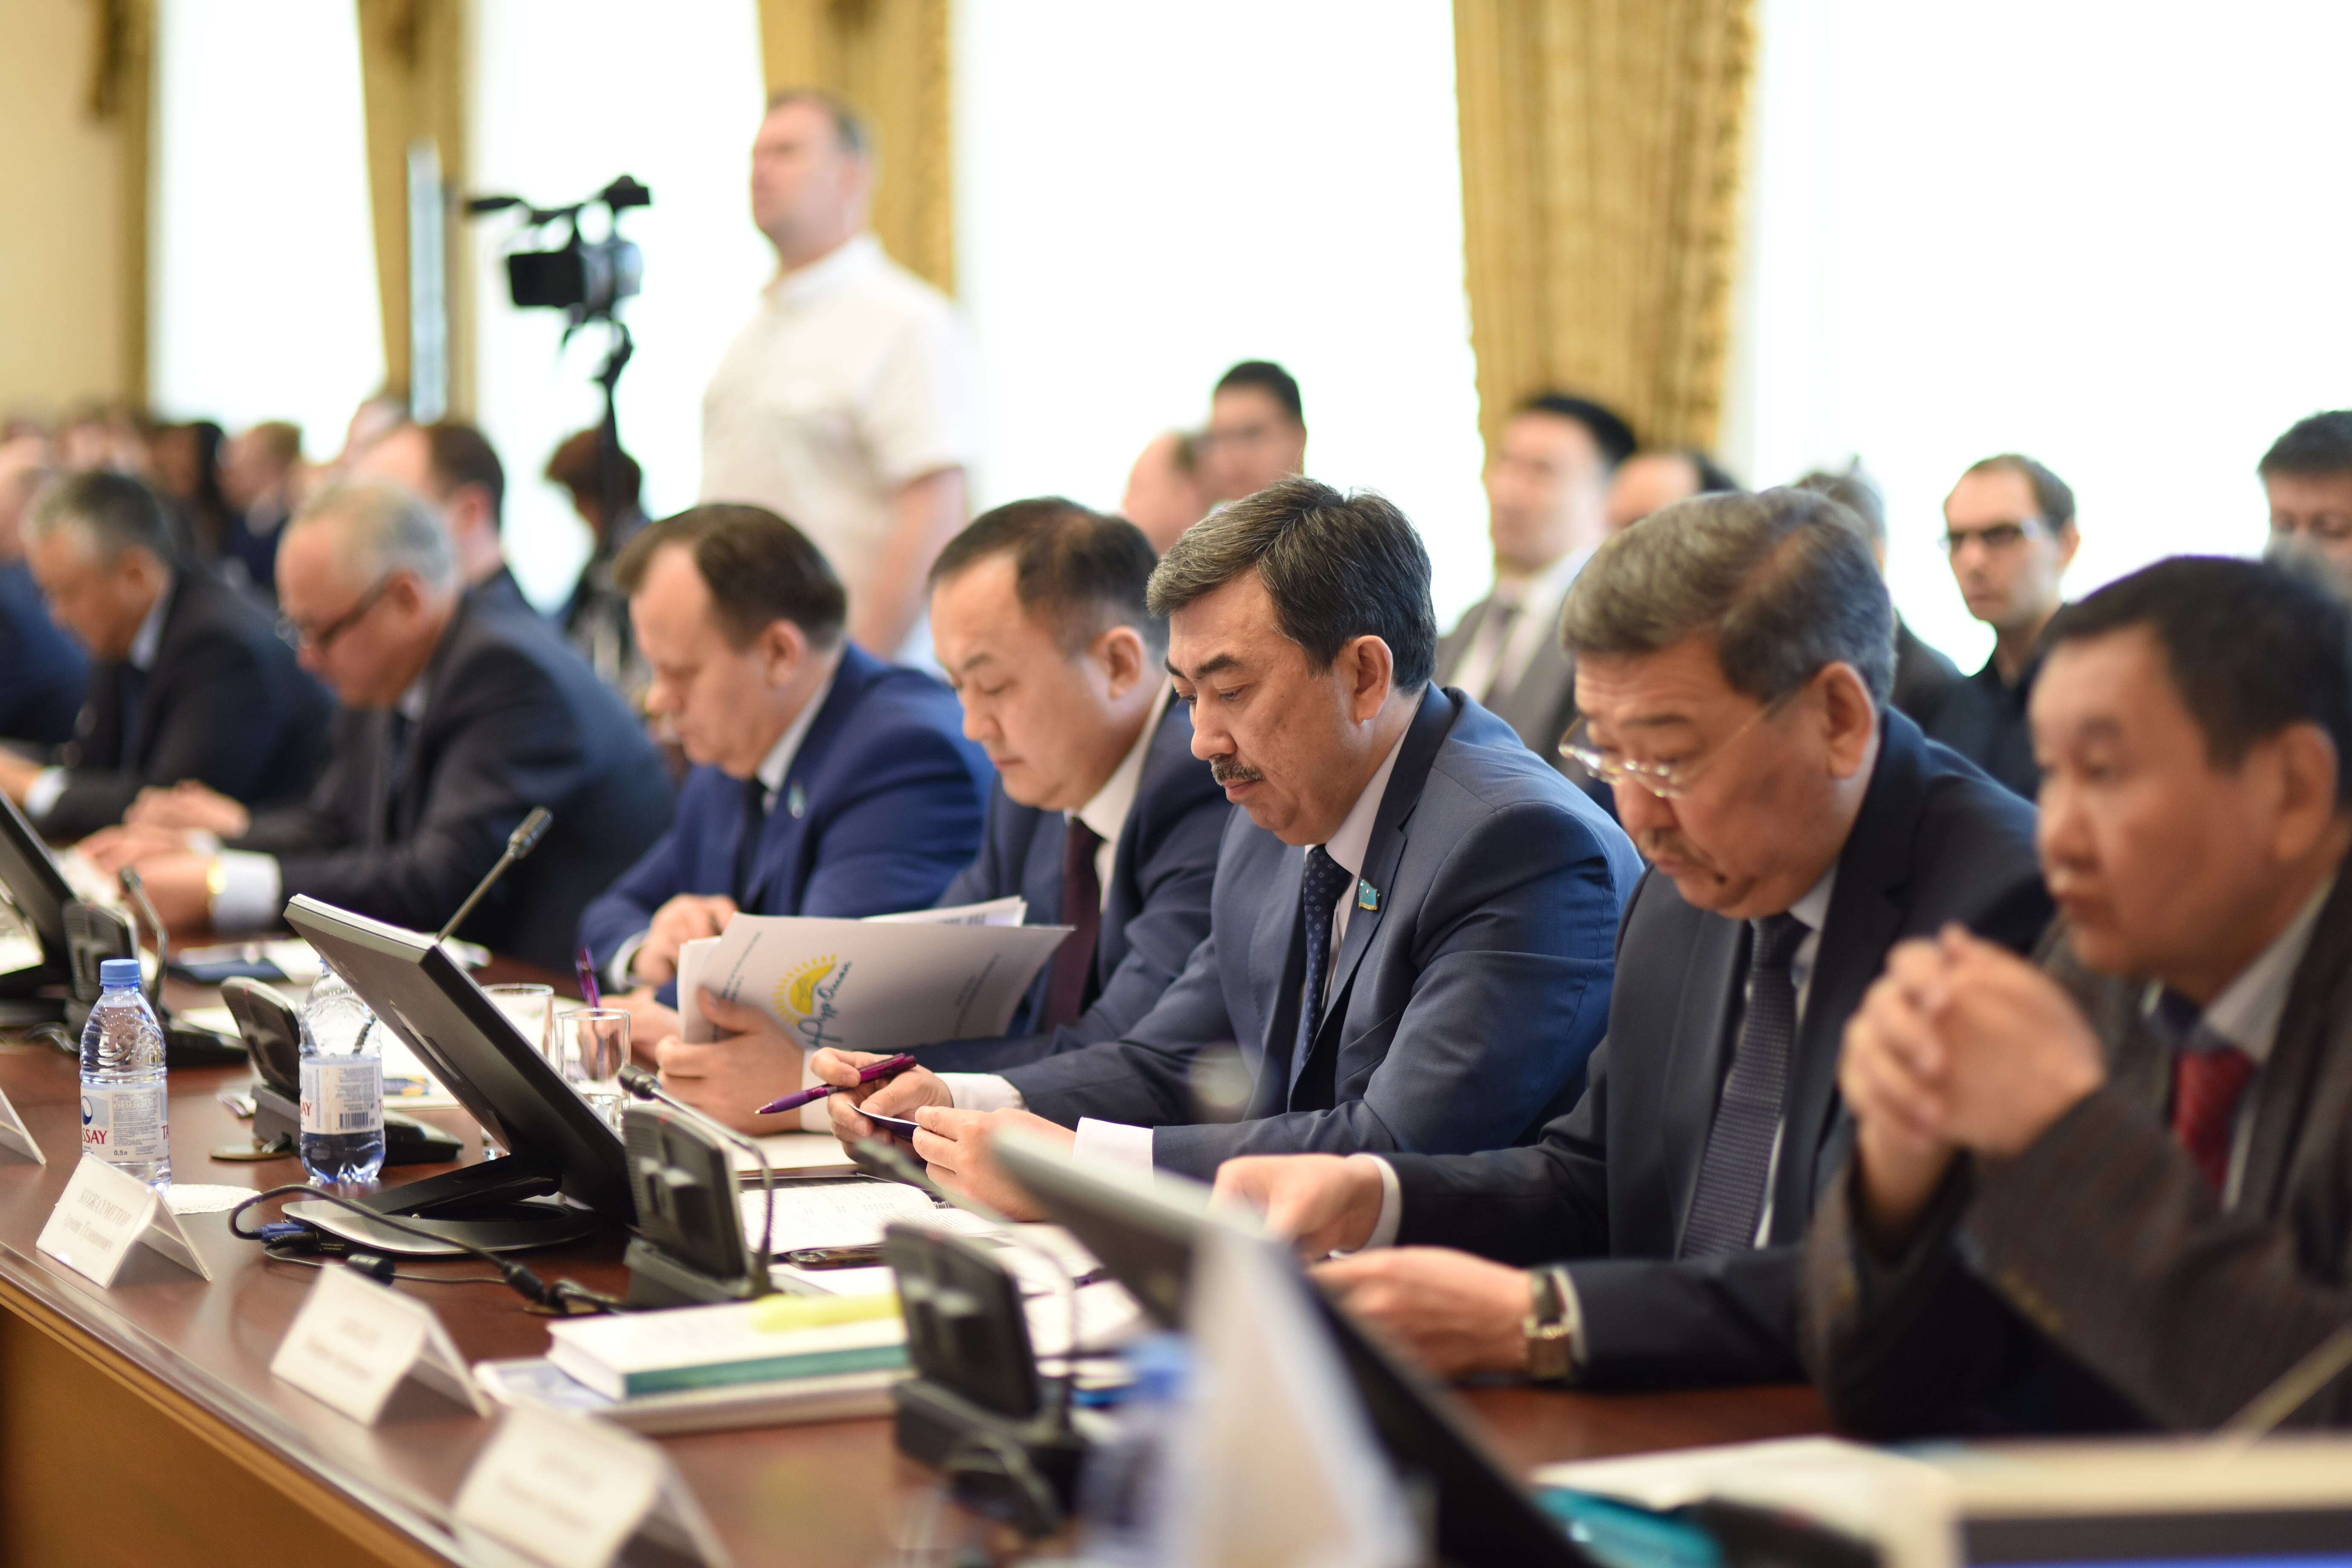 В городе Костанай состоялась Международная научно-практическая конференция на тему: «Уголовно-исполнительная система Республики Казахстан: существующие проблемы и перспективы  дальнейшего развития».